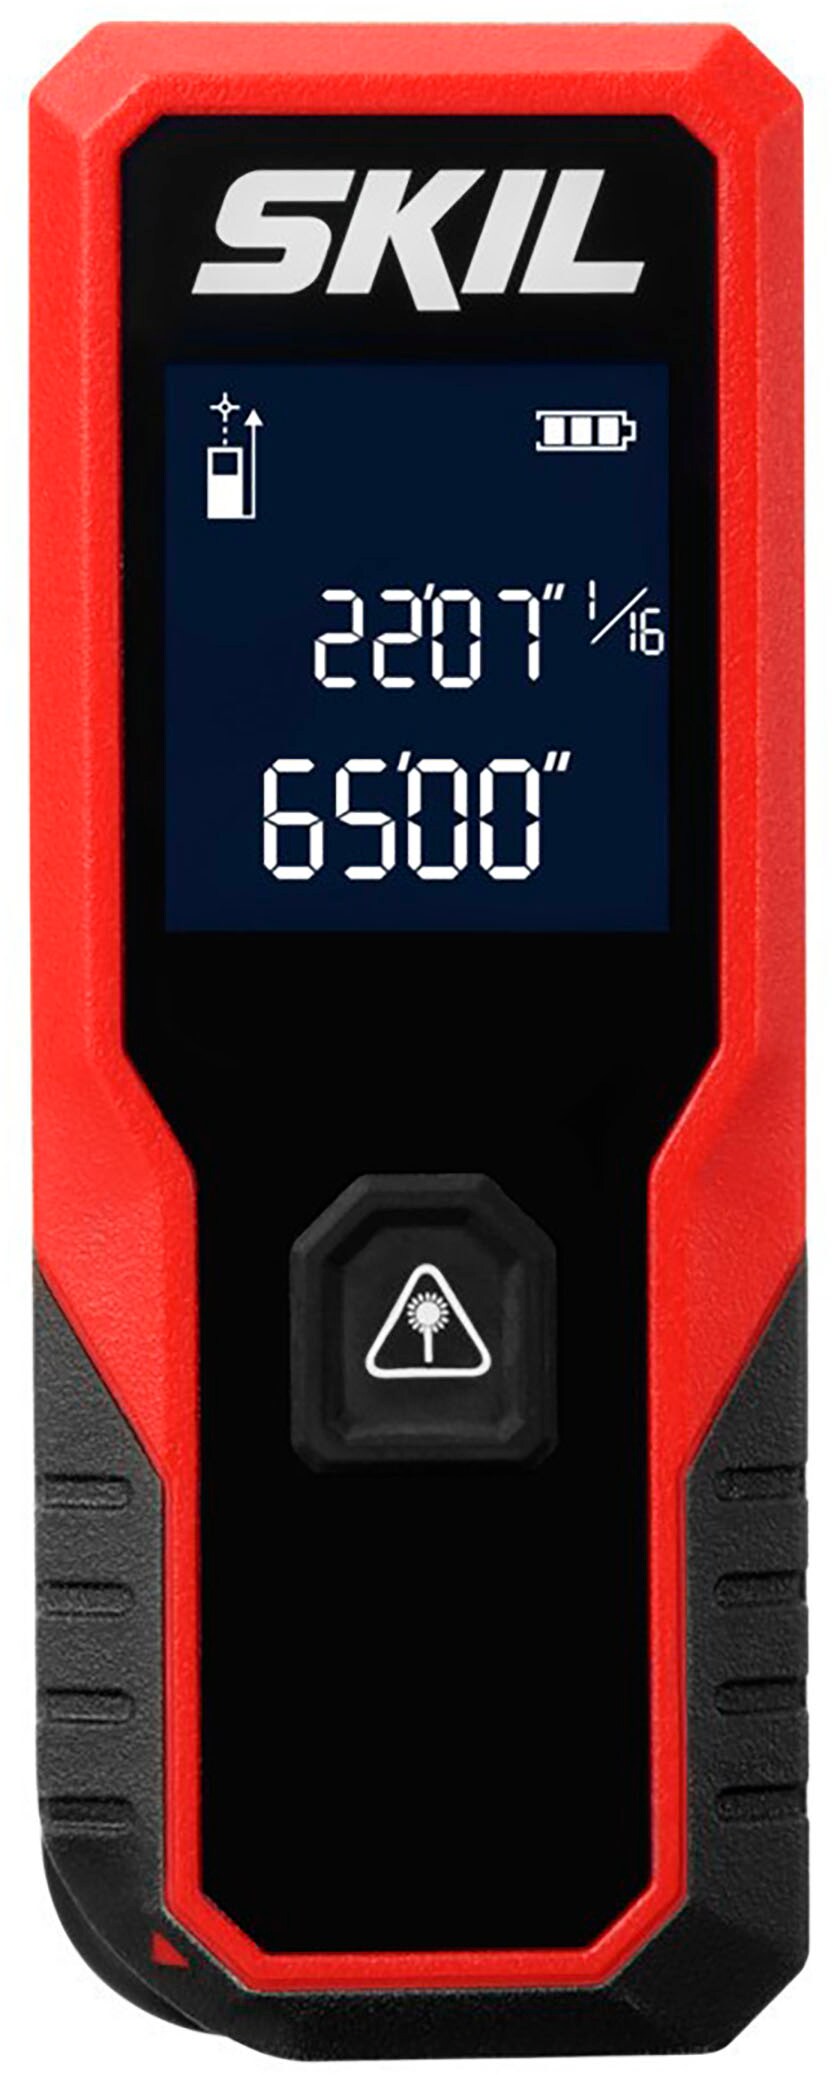 Skil - 65-Ft Laser Measurer with Wheel - Red/Black_0